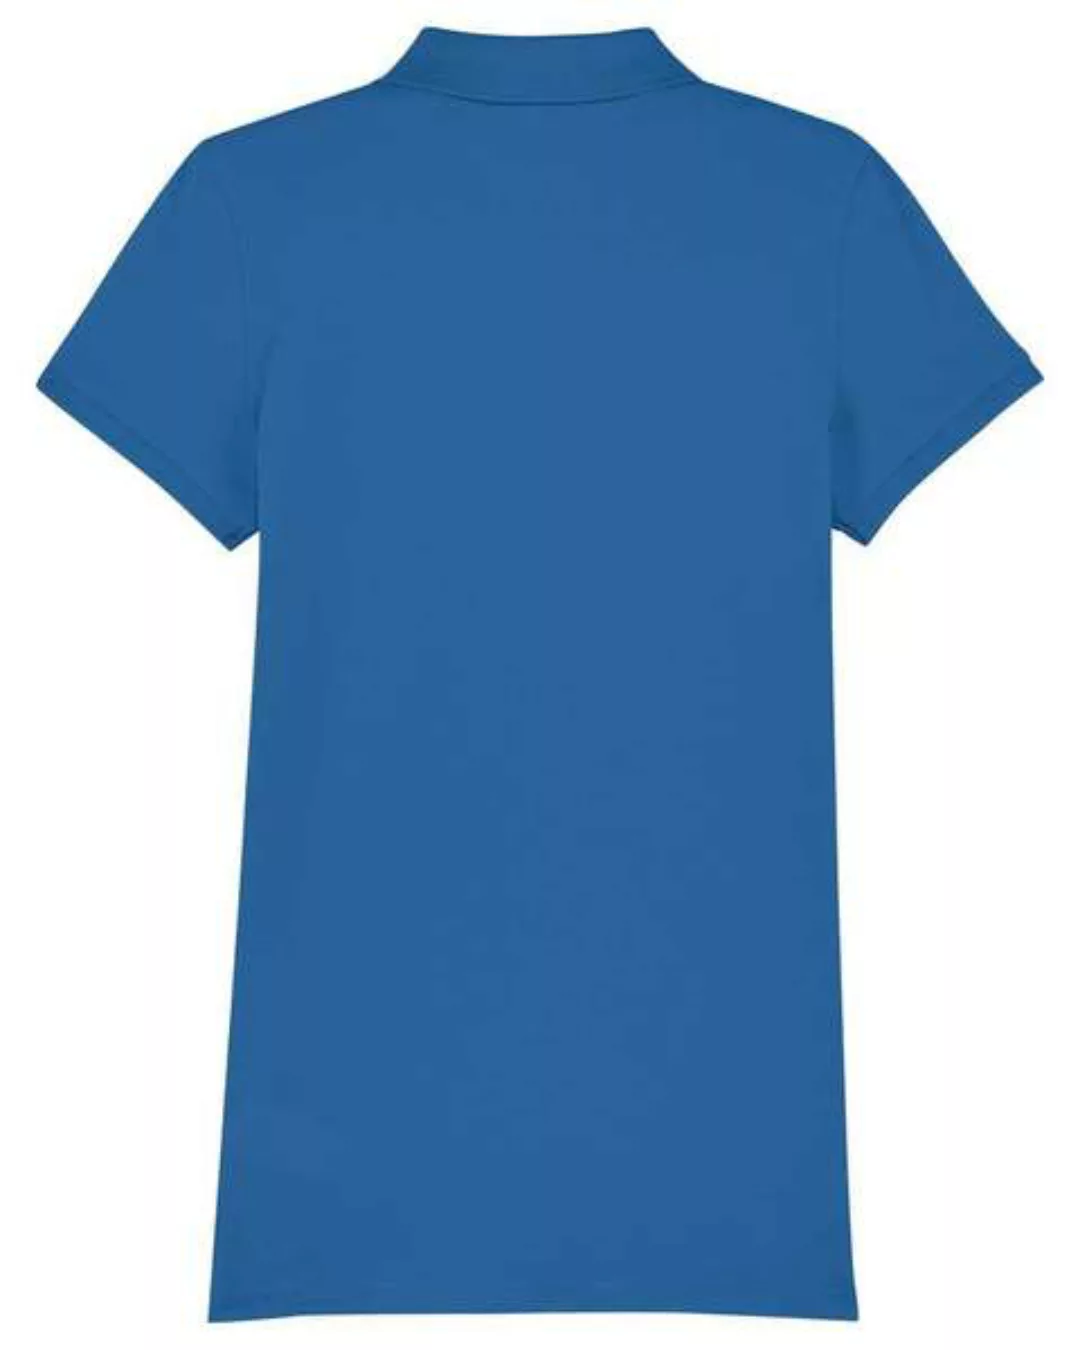 Damen Poloshirt In Verschiedenen Farben Mit 2 Knöpfen. Polo Pique. günstig online kaufen